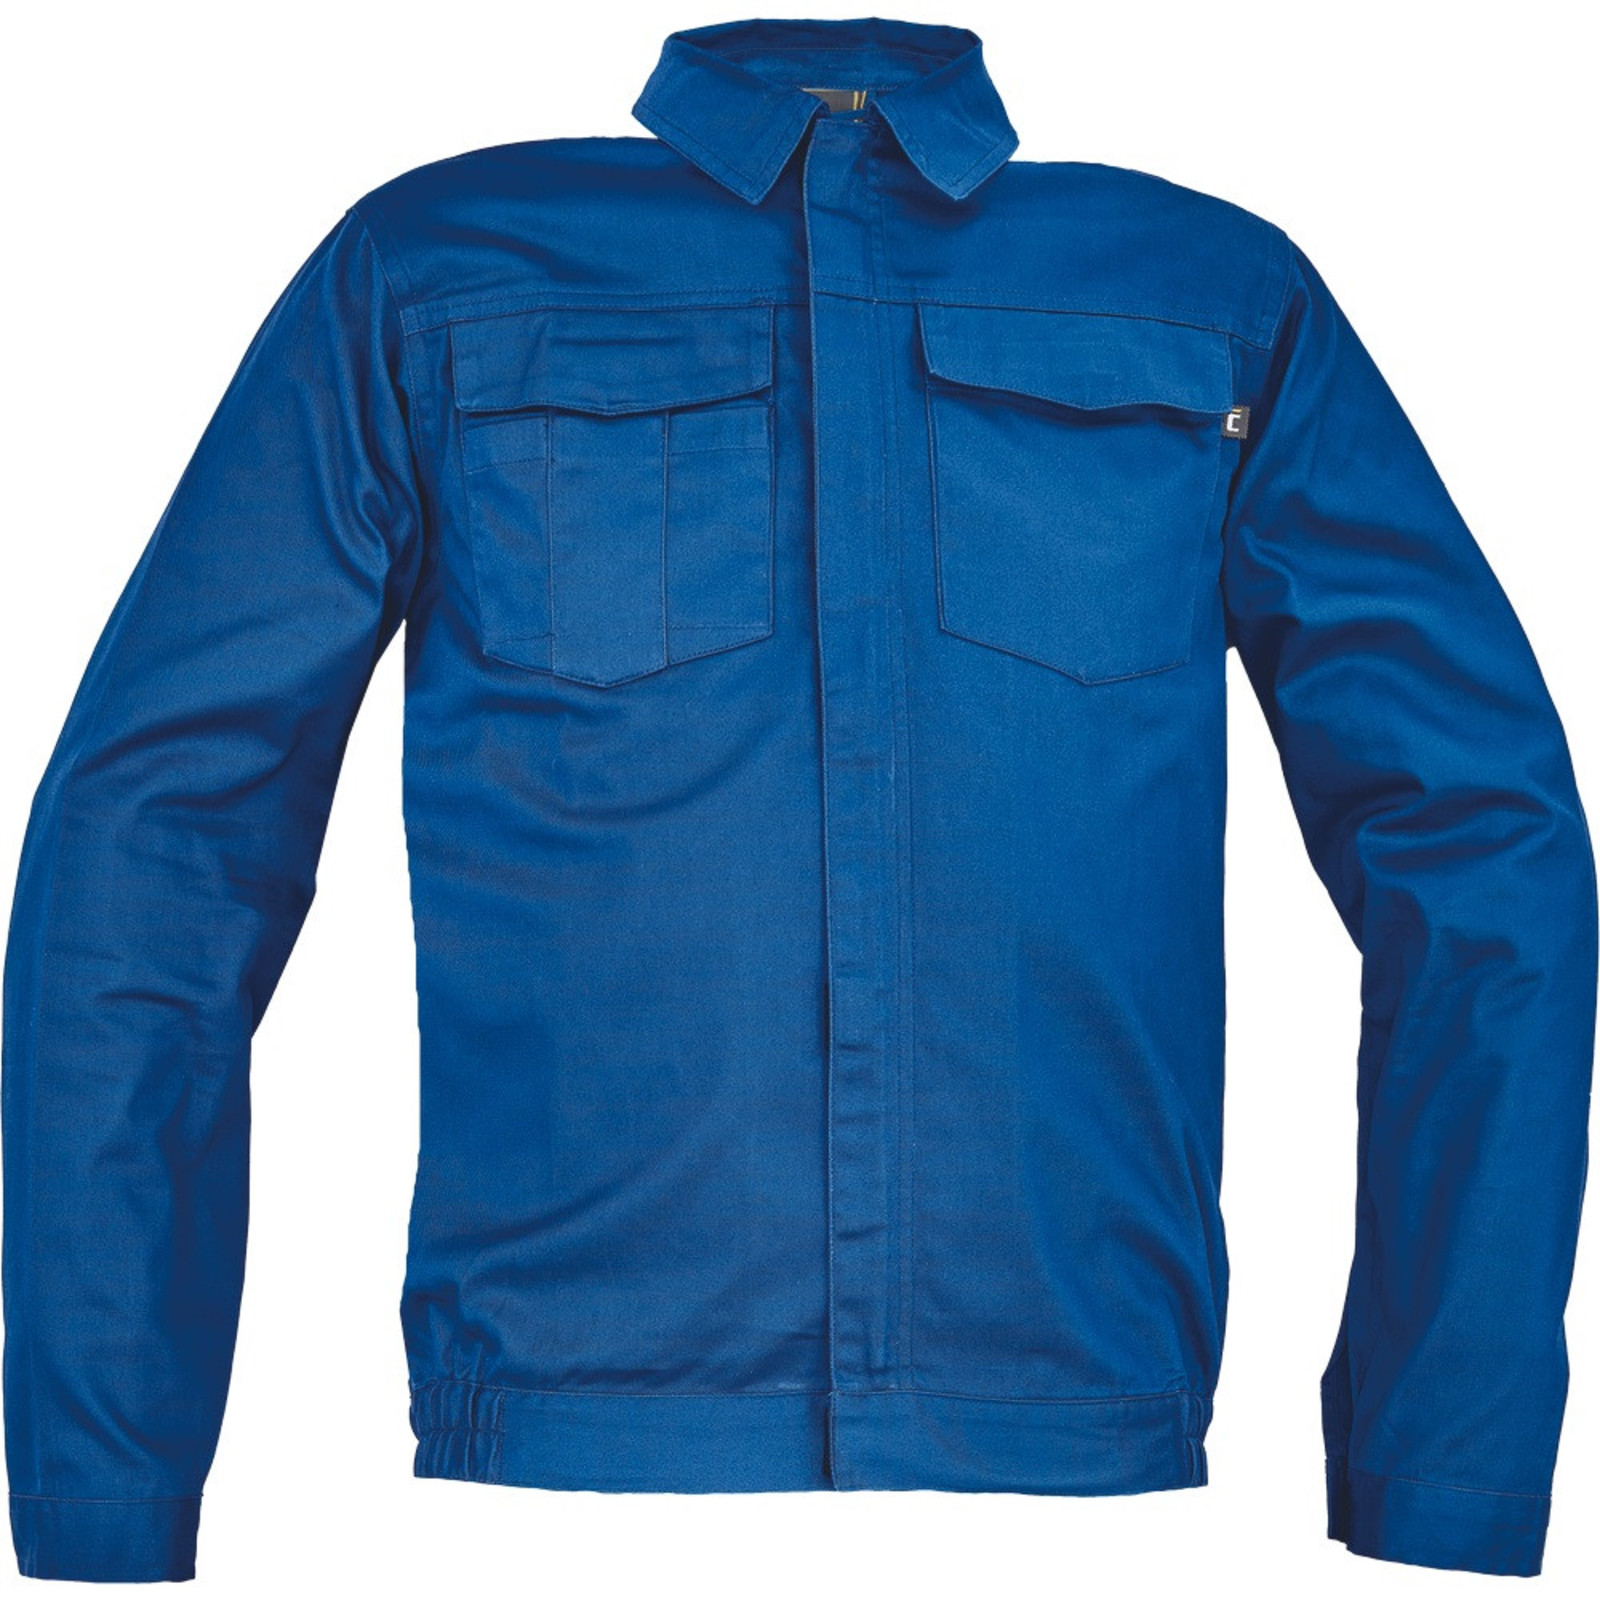 Pánska ľahká pracovná bunda Cerva Ciudades Basic Zaragoza - veľkosť: 58, farba: royal blue